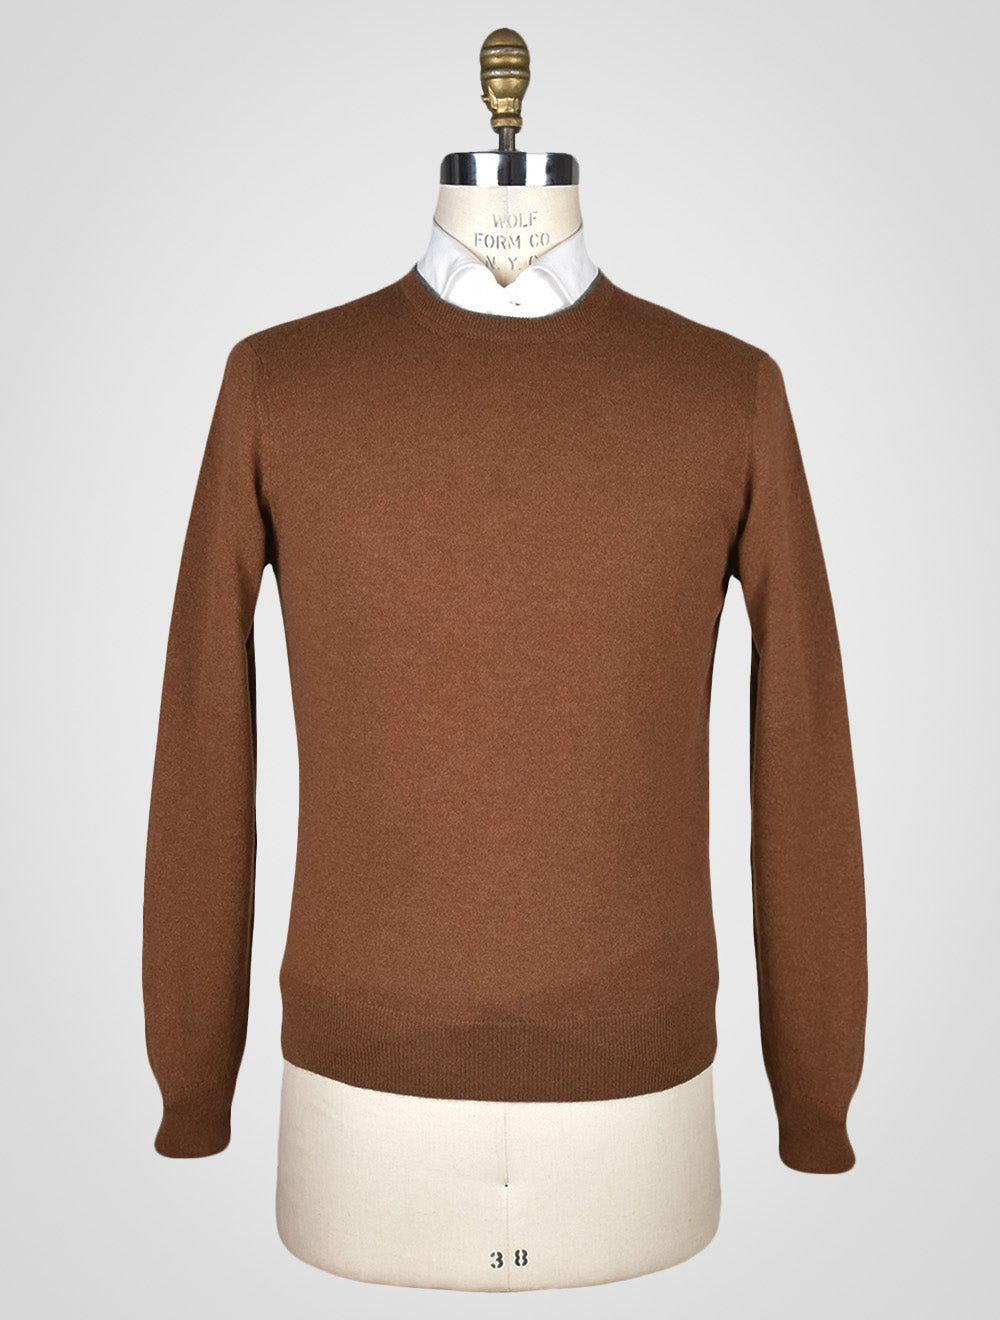 Коричневый кашемировый свитер Fioroni с круглым вырезом